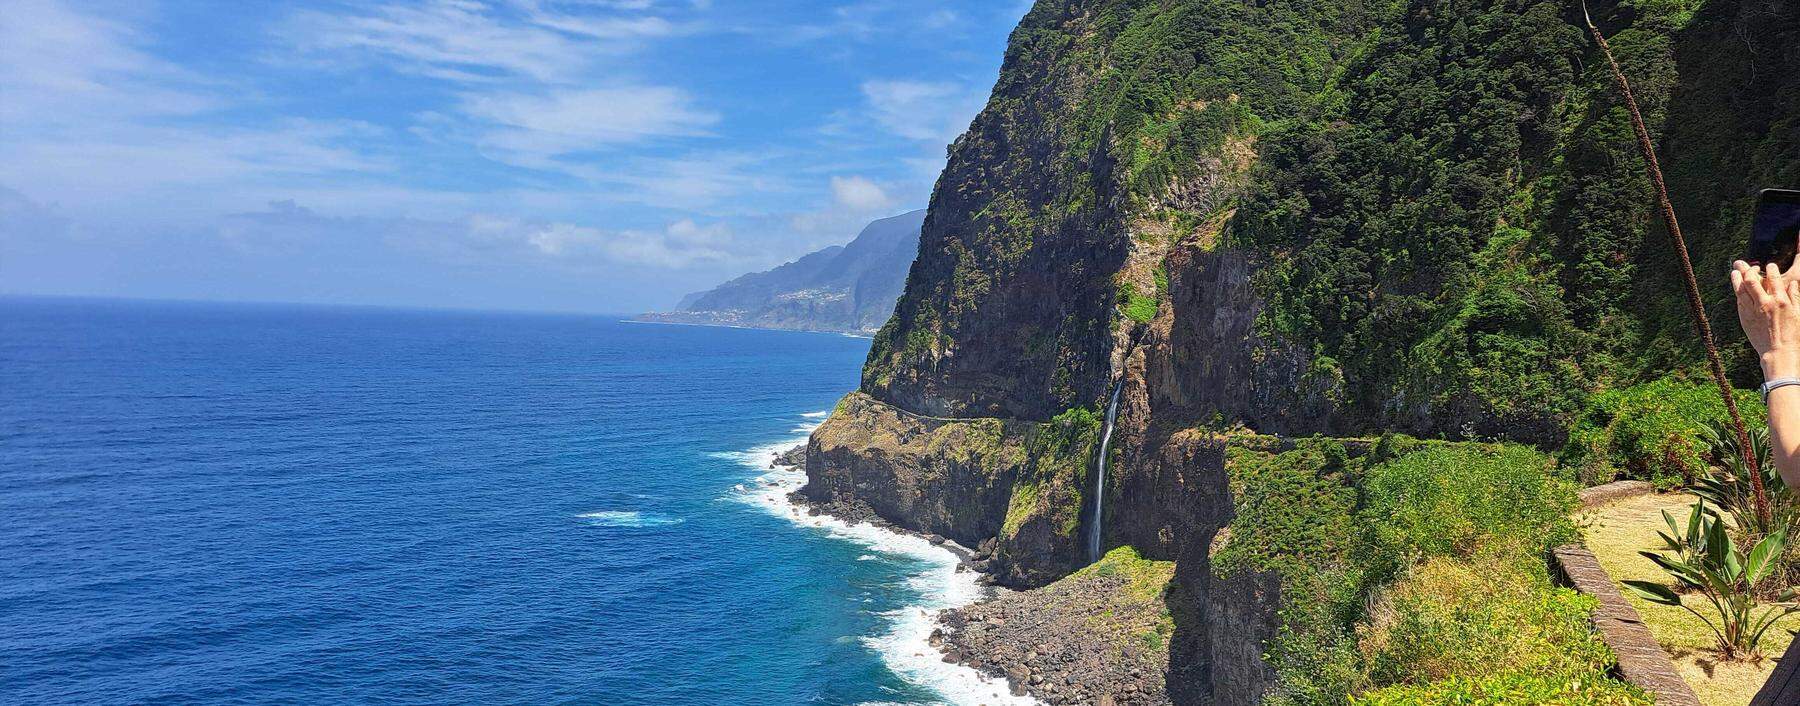 FLuten. Mit jedem bisschen Niederschlag entspringen den Felswänden auf Madeira neue Wasserfälle.